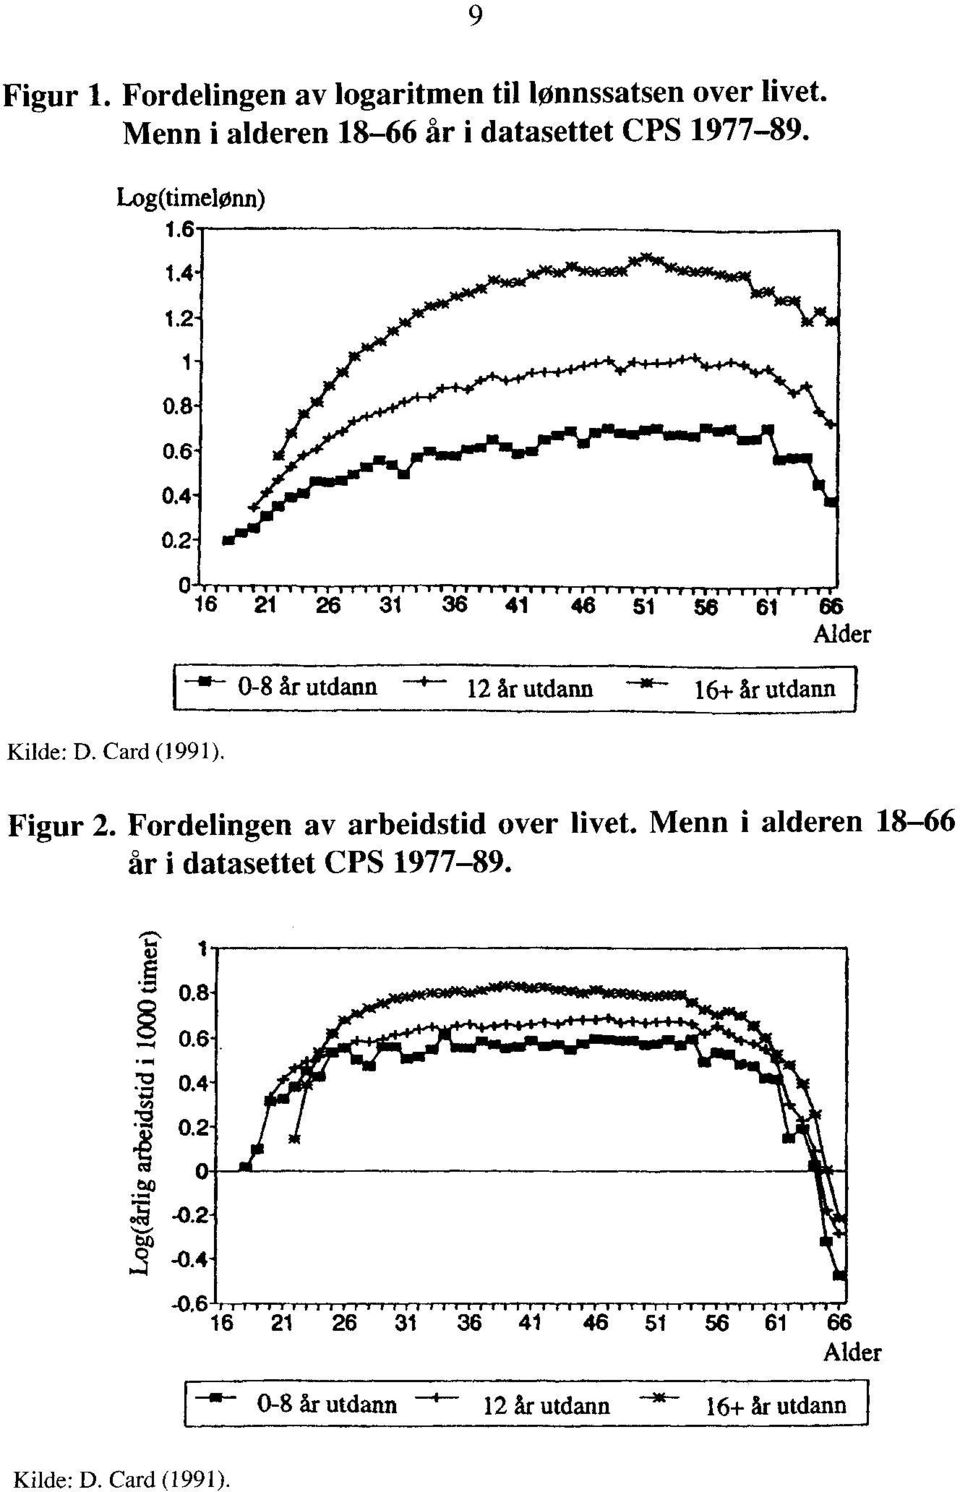 Fordelingen av arbeidstid over livet. Menn i alderen 18-66 år i datasettet CPS 1977-89. 1.. ) 1 0. 0.8 8. 1.4-1.2-0.8-0.6-0.4-0.2-.= 0.